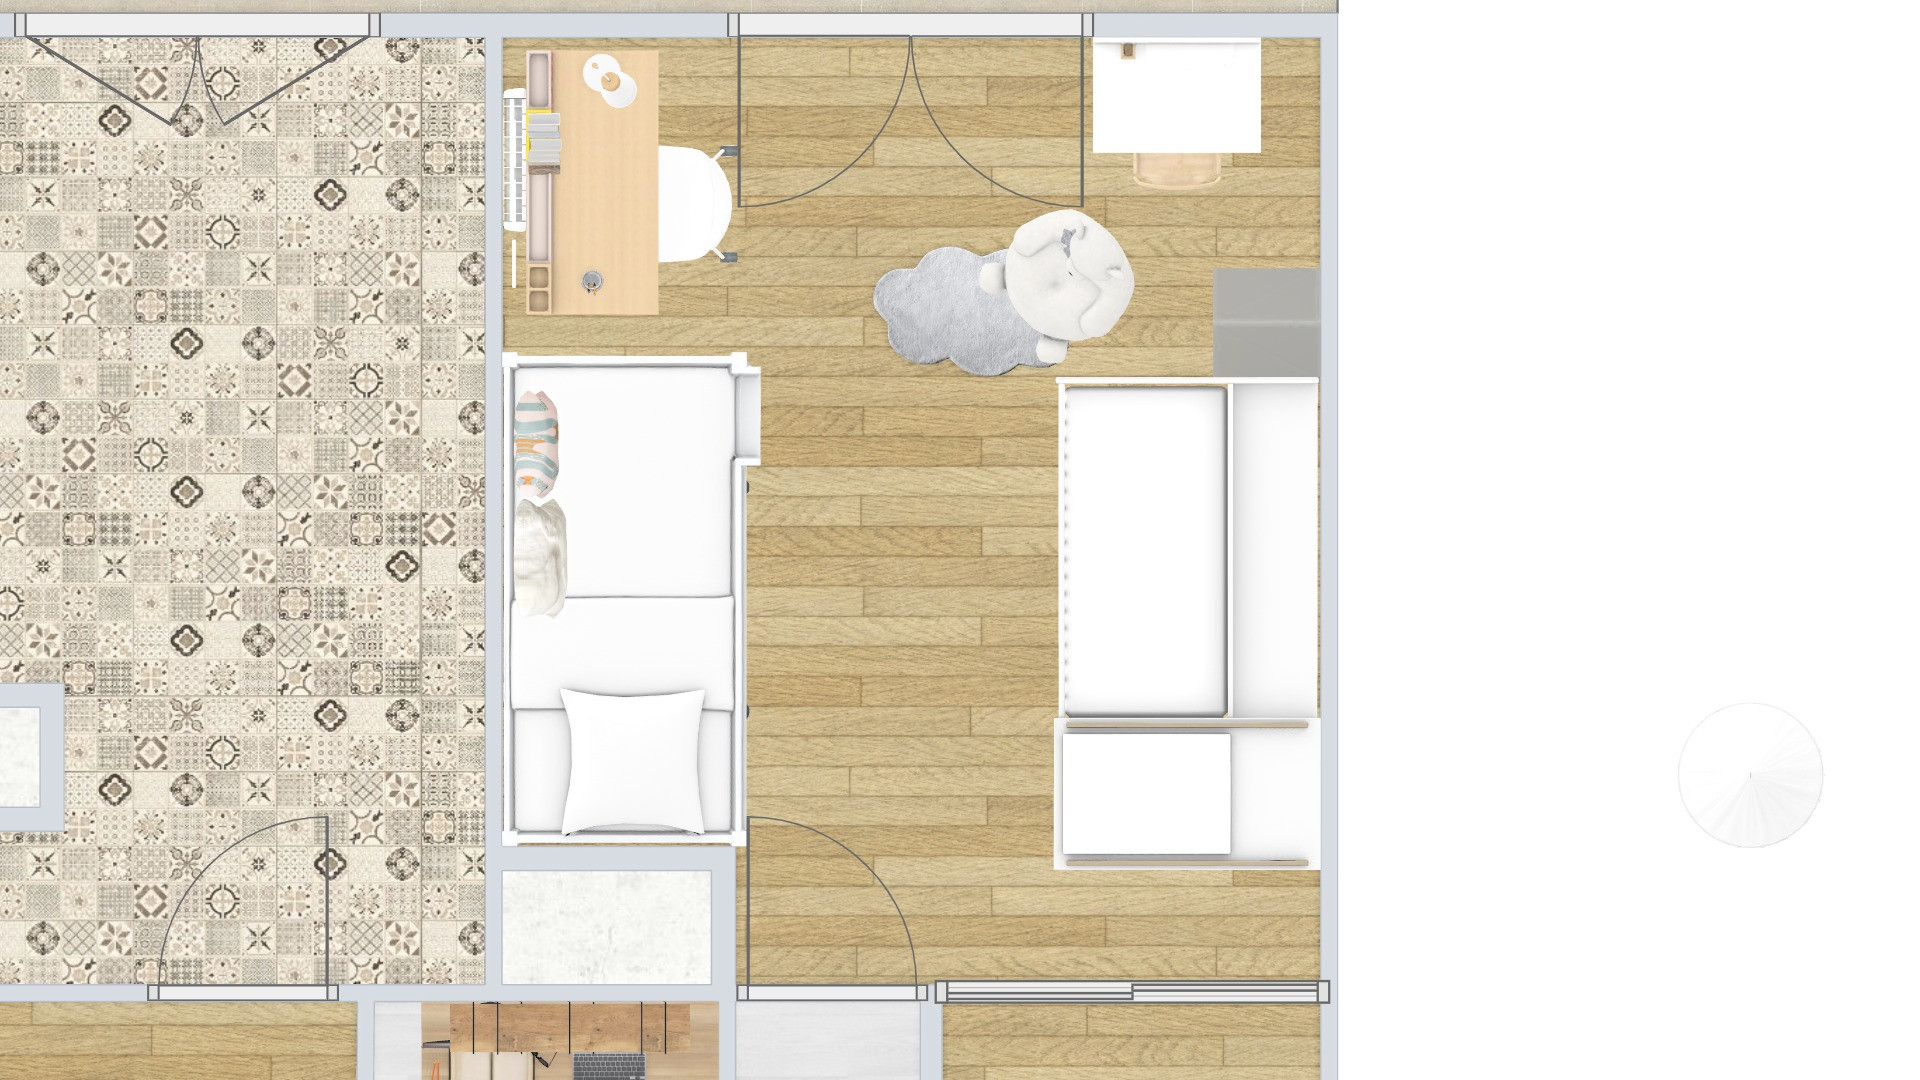 Rénovation et nouvelle distribution des espaces d'un appartement 3 pièces